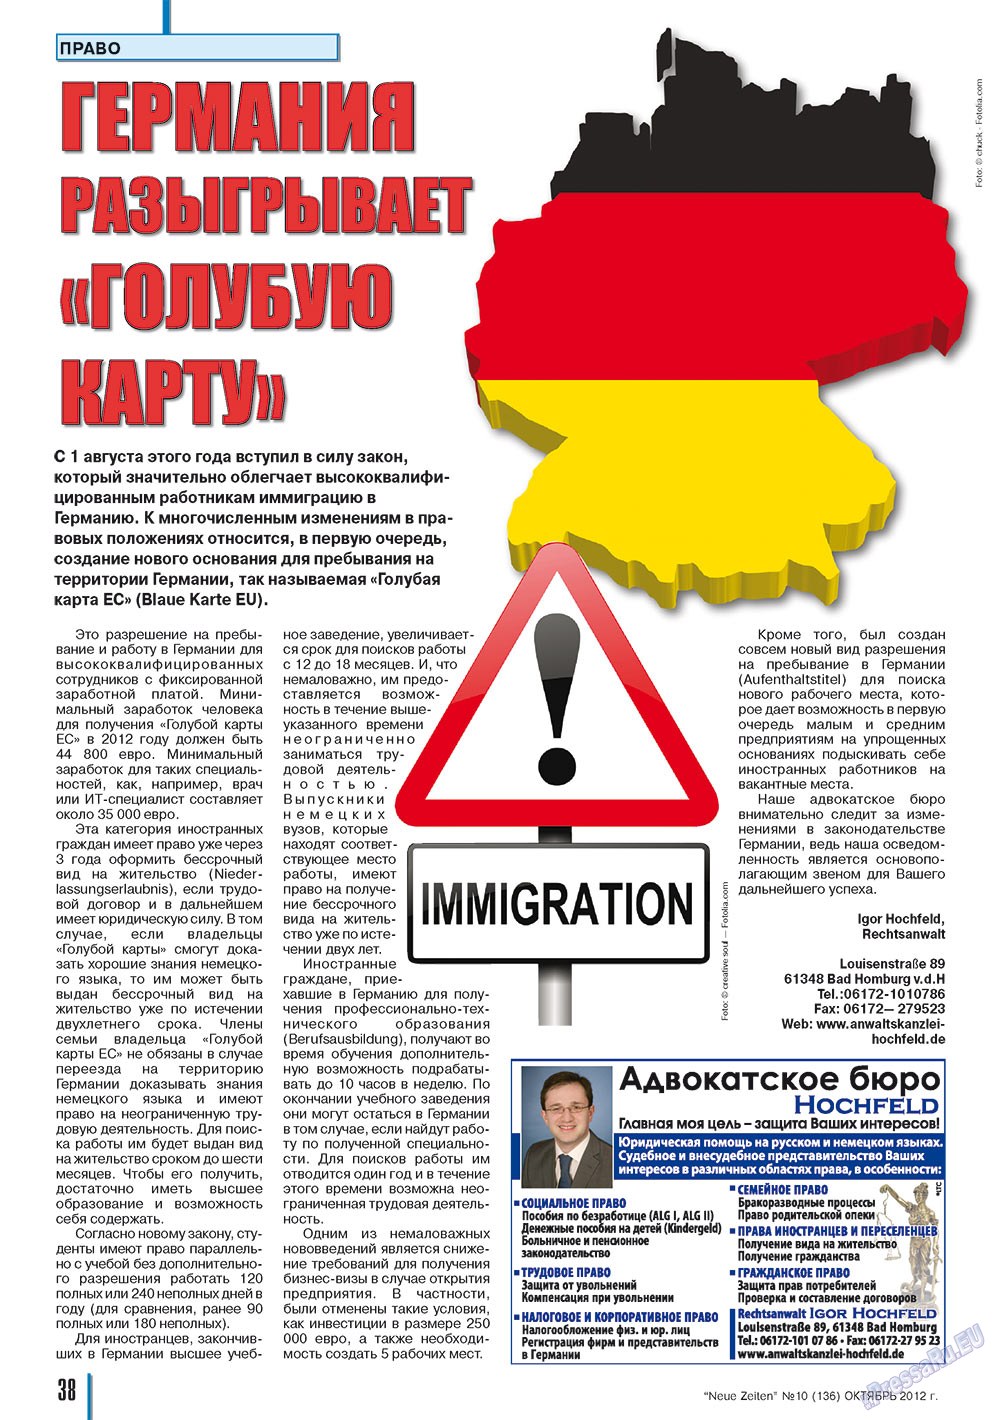 Neue Zeiten, журнал. 2012 №10 стр.38